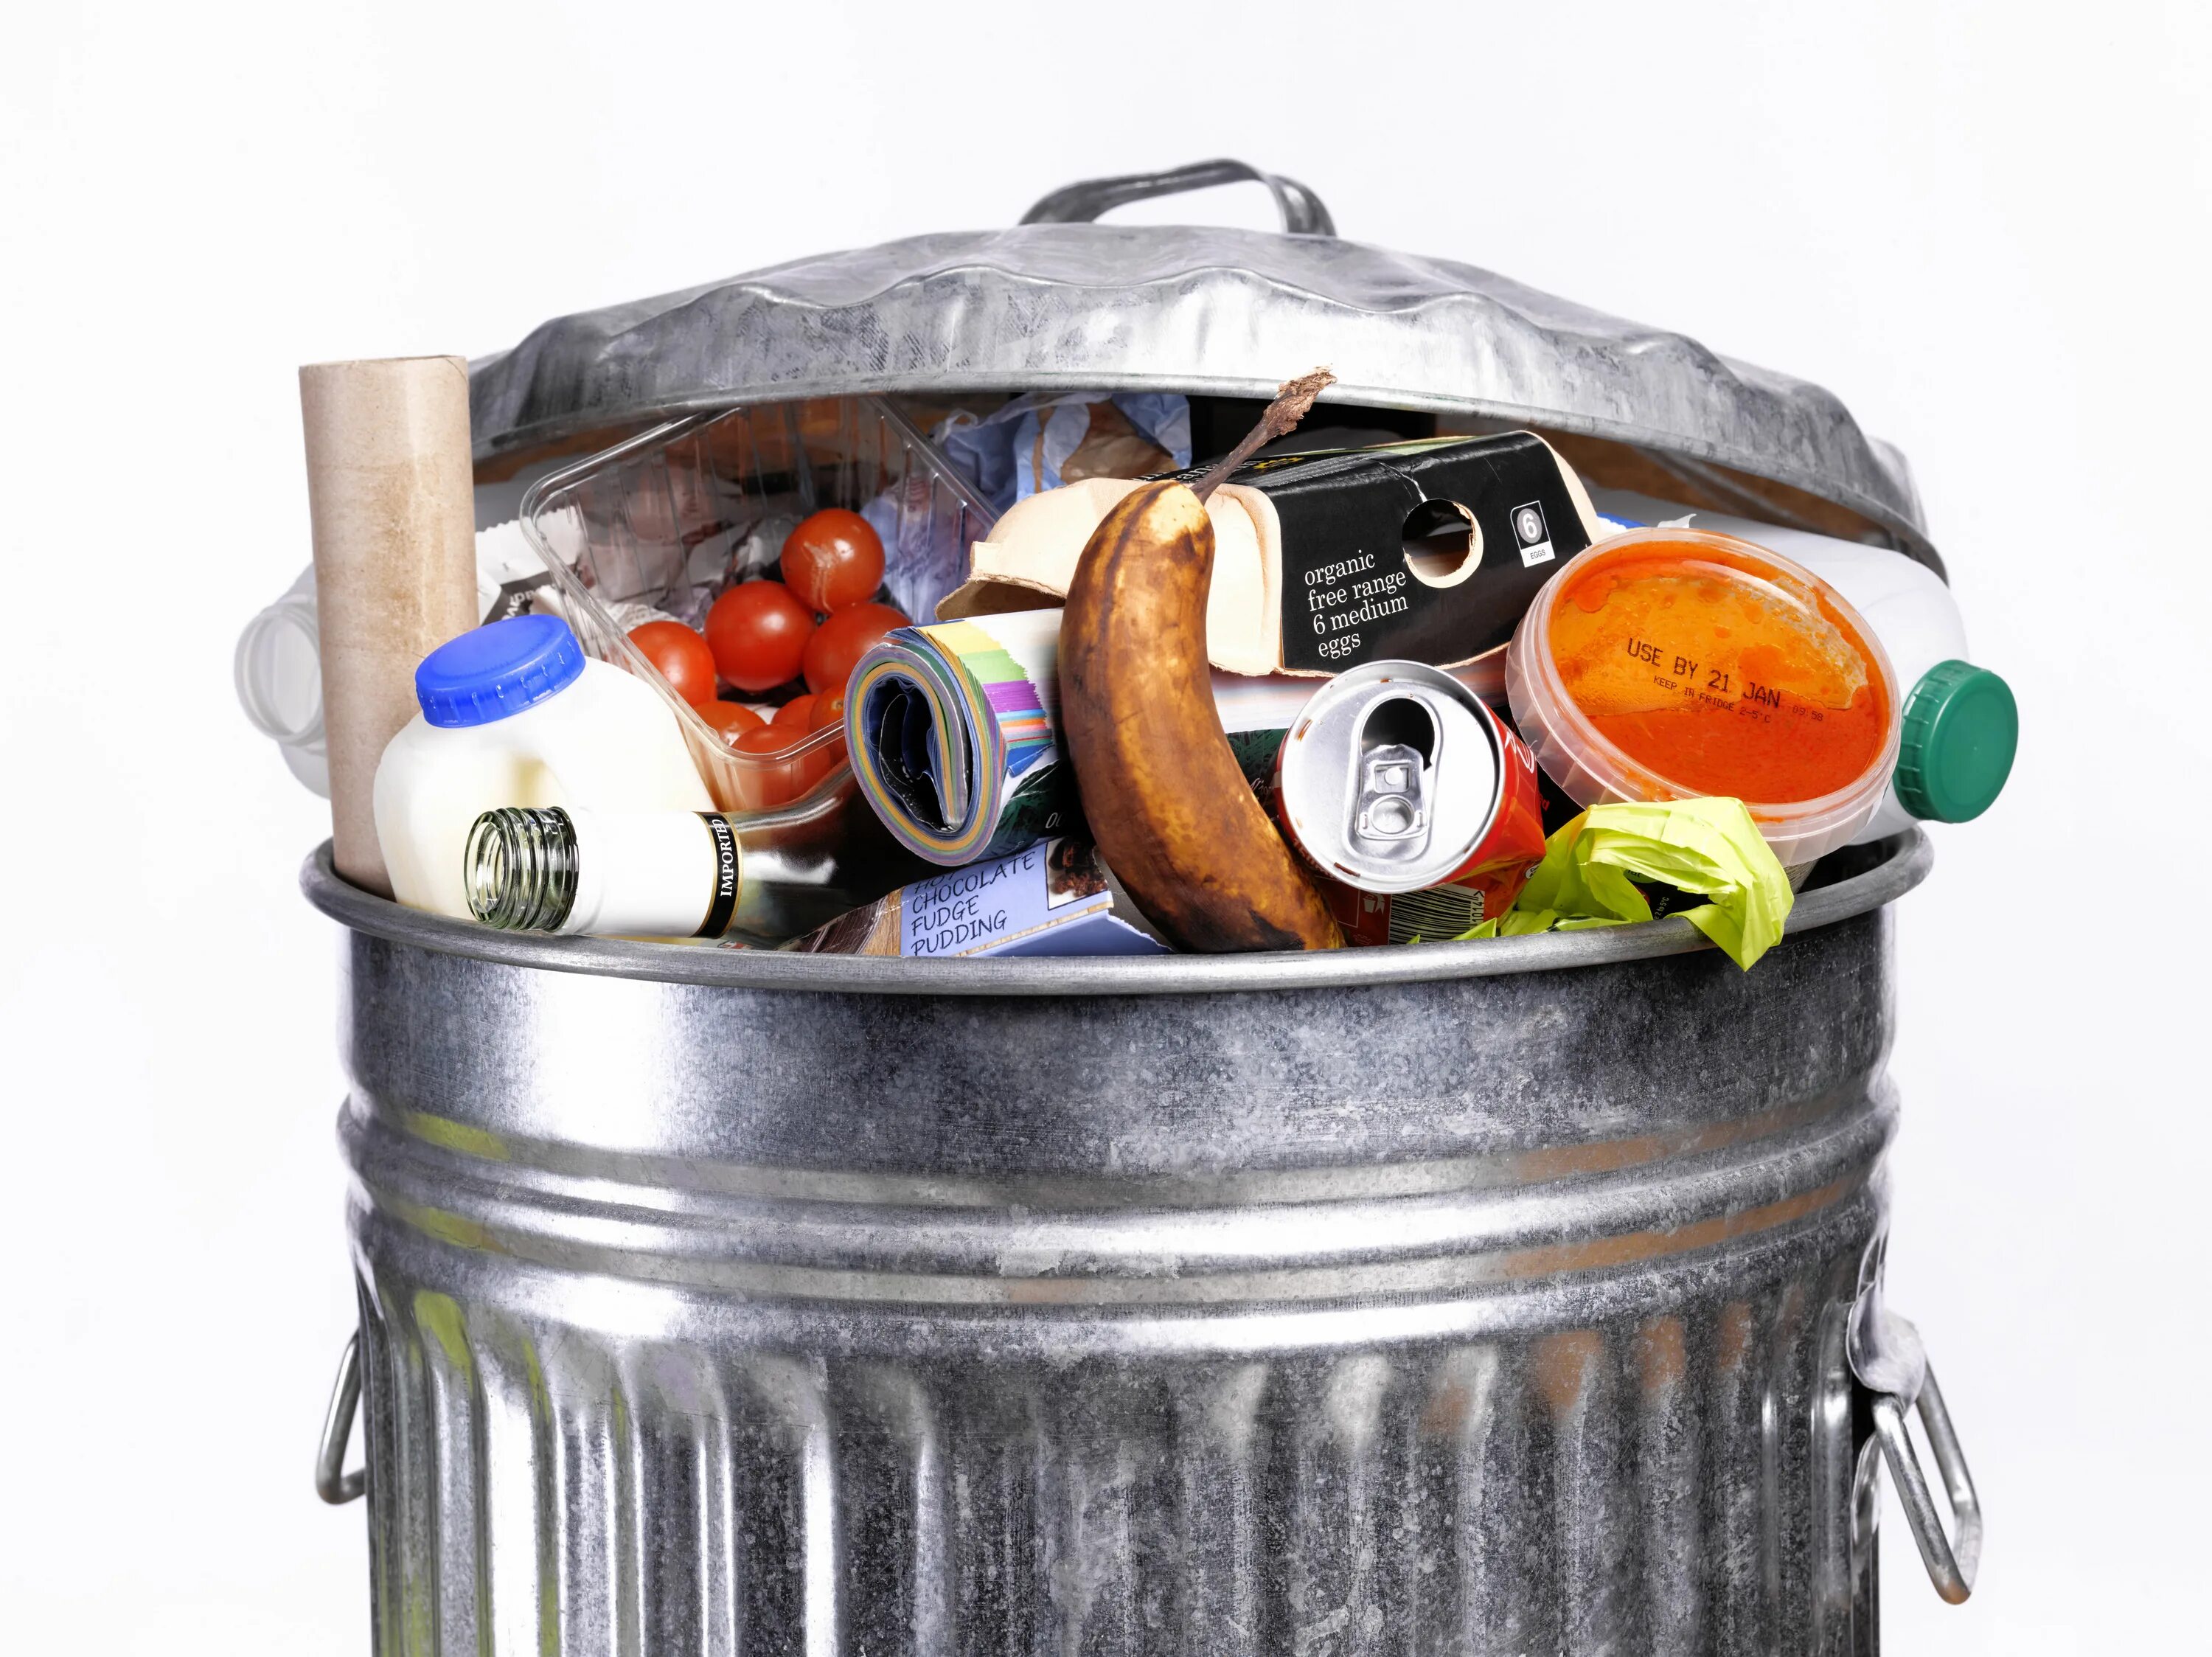 Пищевые отходы кухонь и организаций. Утилизация пищевых отходов. Для пищевых отходов. Мусорное ведро с продуктами.